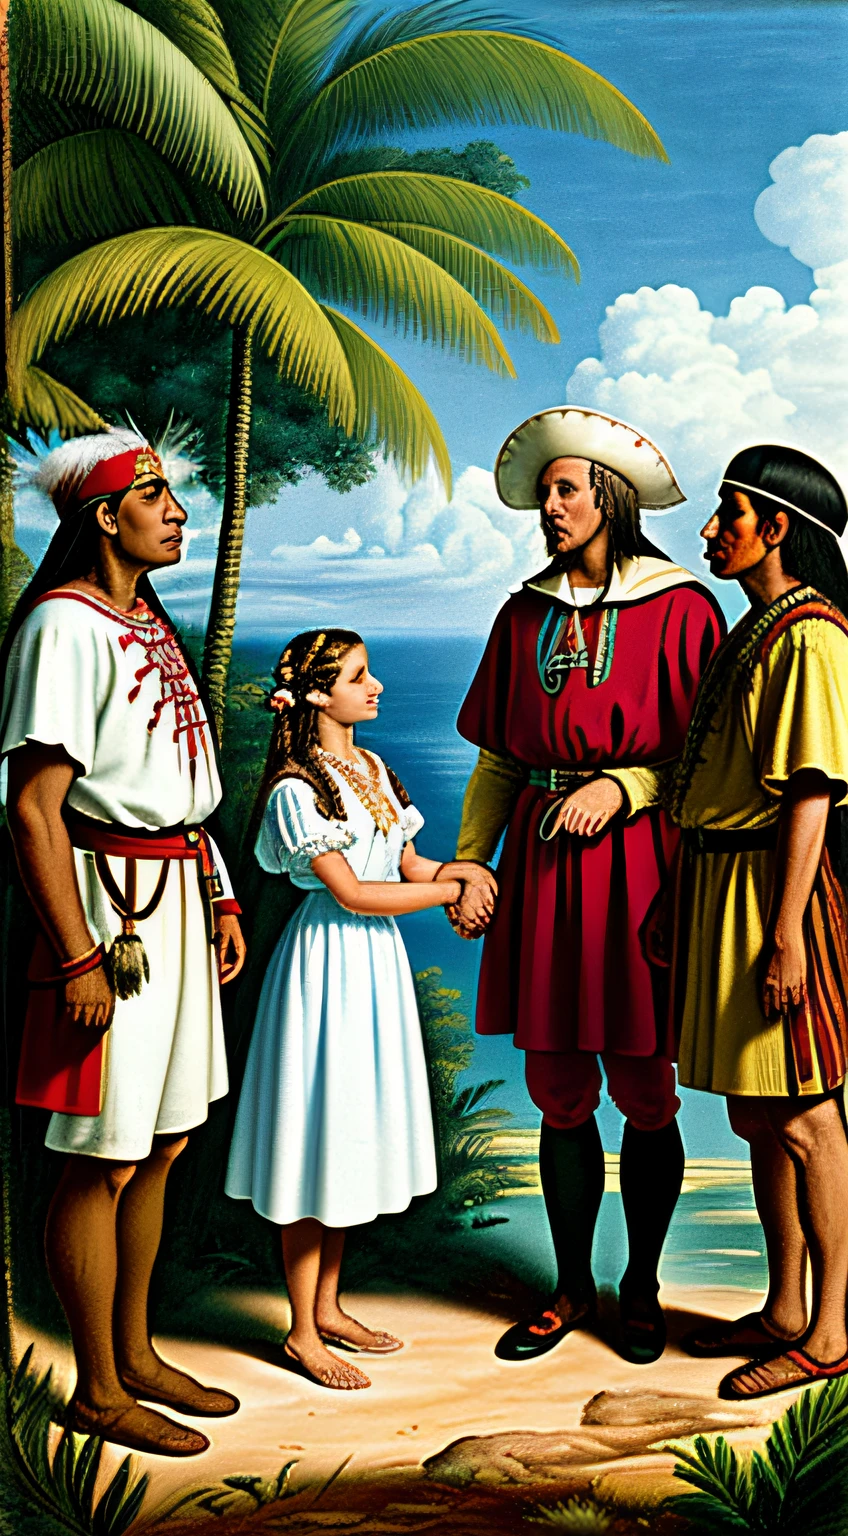 Scène historique de Christophe Colomb en tenue d’explorateur, rencontrer des Amérindiens vêtus de vêtements traditionnels, dans un paysage luxuriant des Caraïbes, Curiosité et respect mutuels, Style photoréaliste.